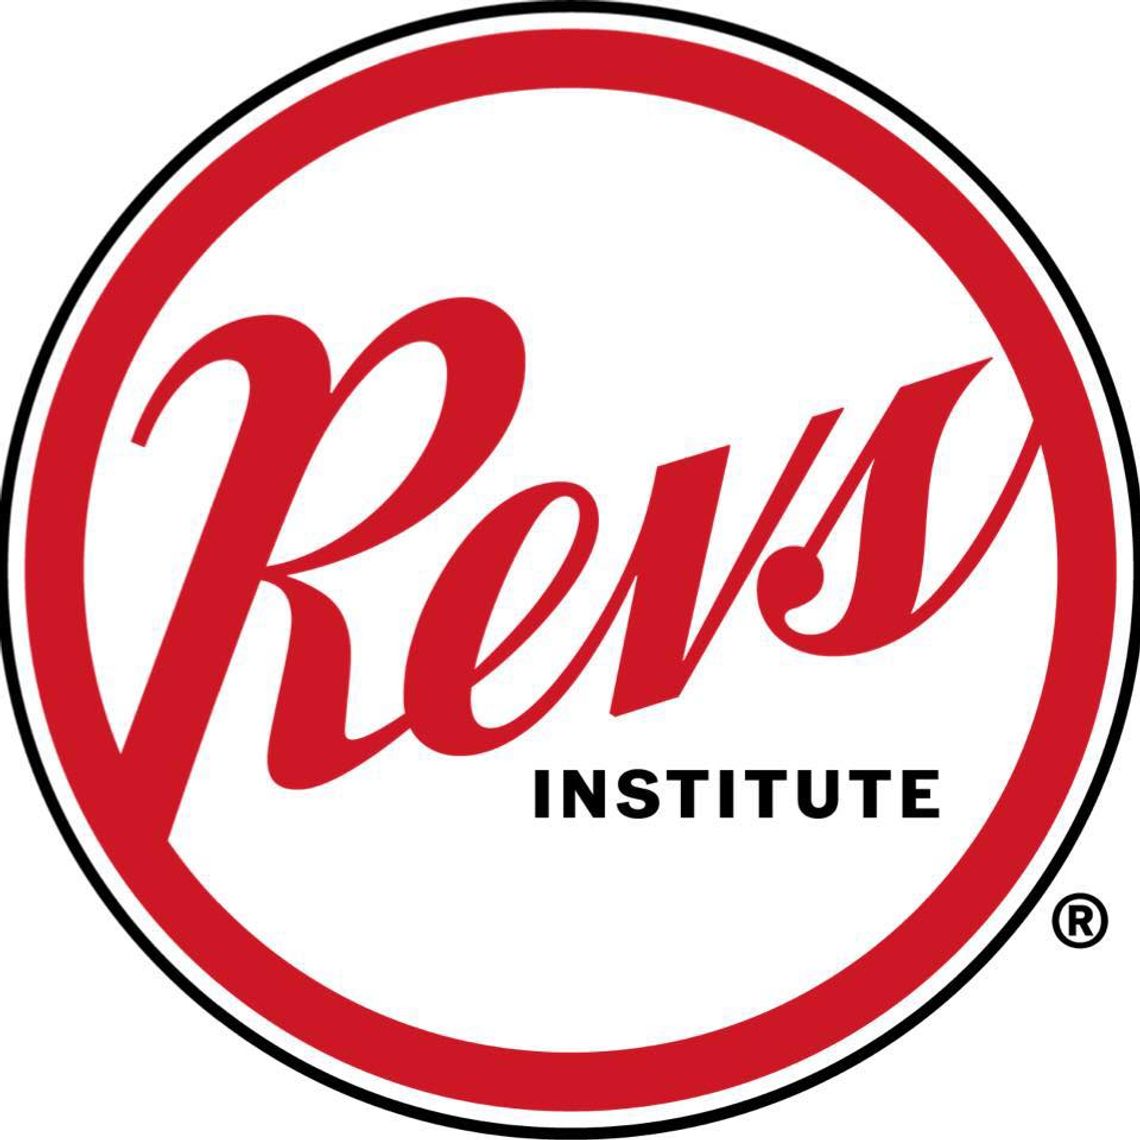 REVS Institute